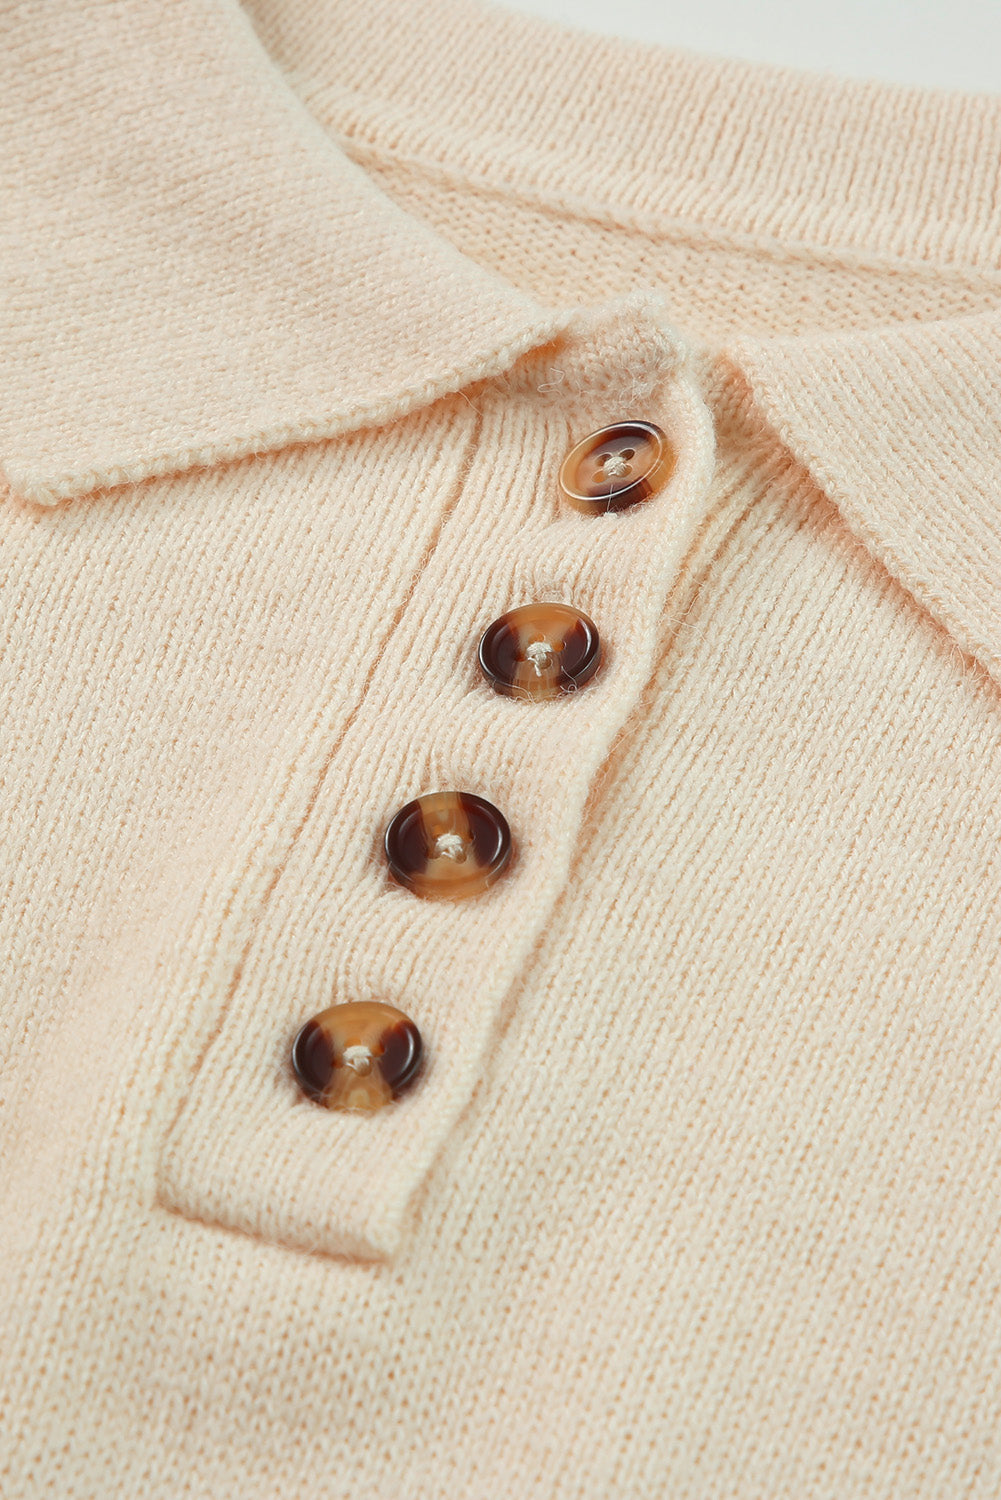 Pletena mini džemper haljina boje marelice s polo ovratnikom